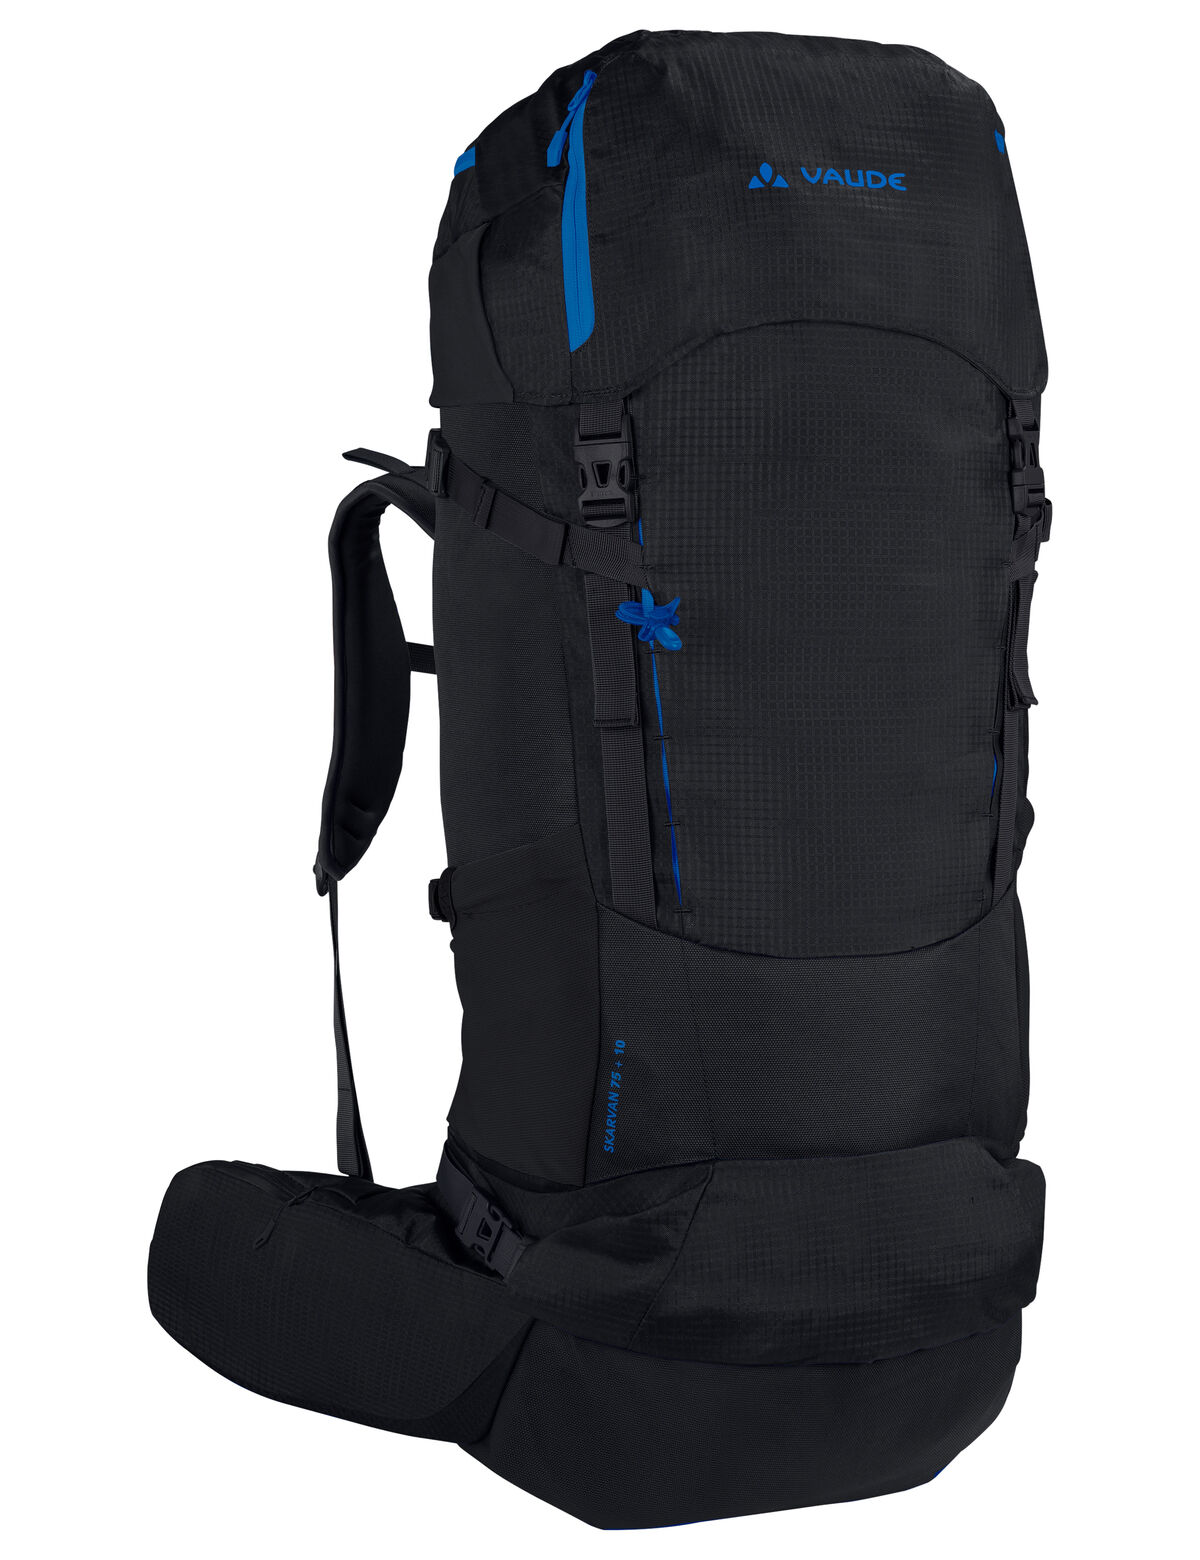 Vaude - Skarvan 75+10 XL - Hiking backpack